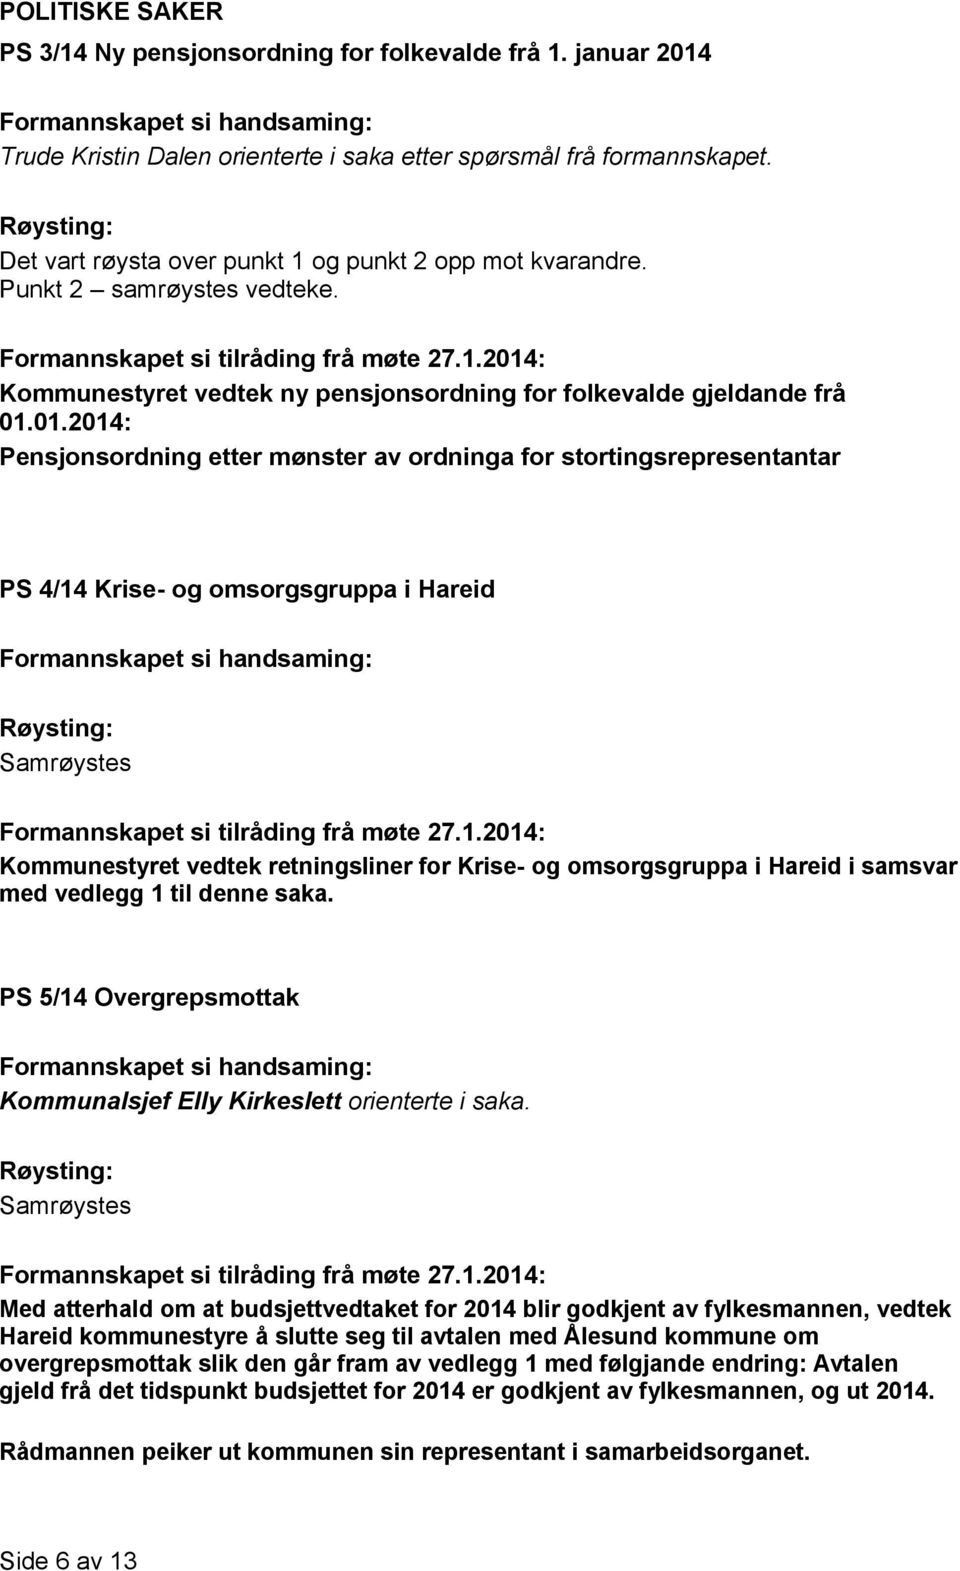 01.2014: Pensjonsordning etter mønster av ordninga for stortingsrepresentantar PS 4/14 Krise- og omsorgsgruppa i Hareid Kommunestyret vedtek retningsliner for Krise- og omsorgsgruppa i Hareid i